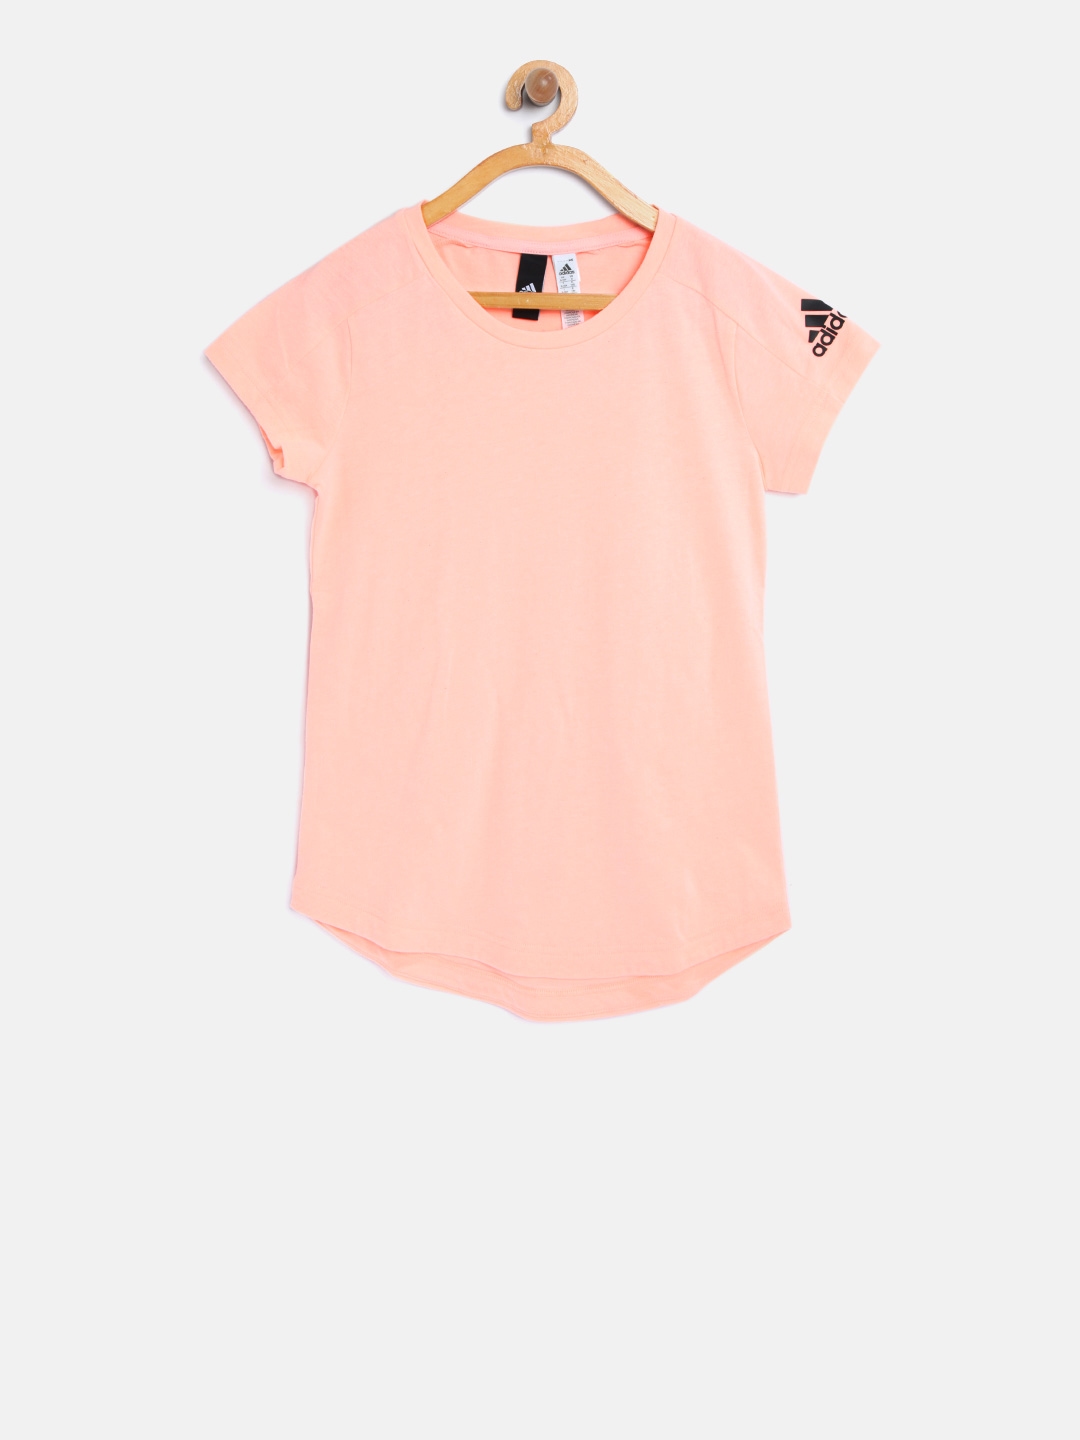 adidas peach shirt